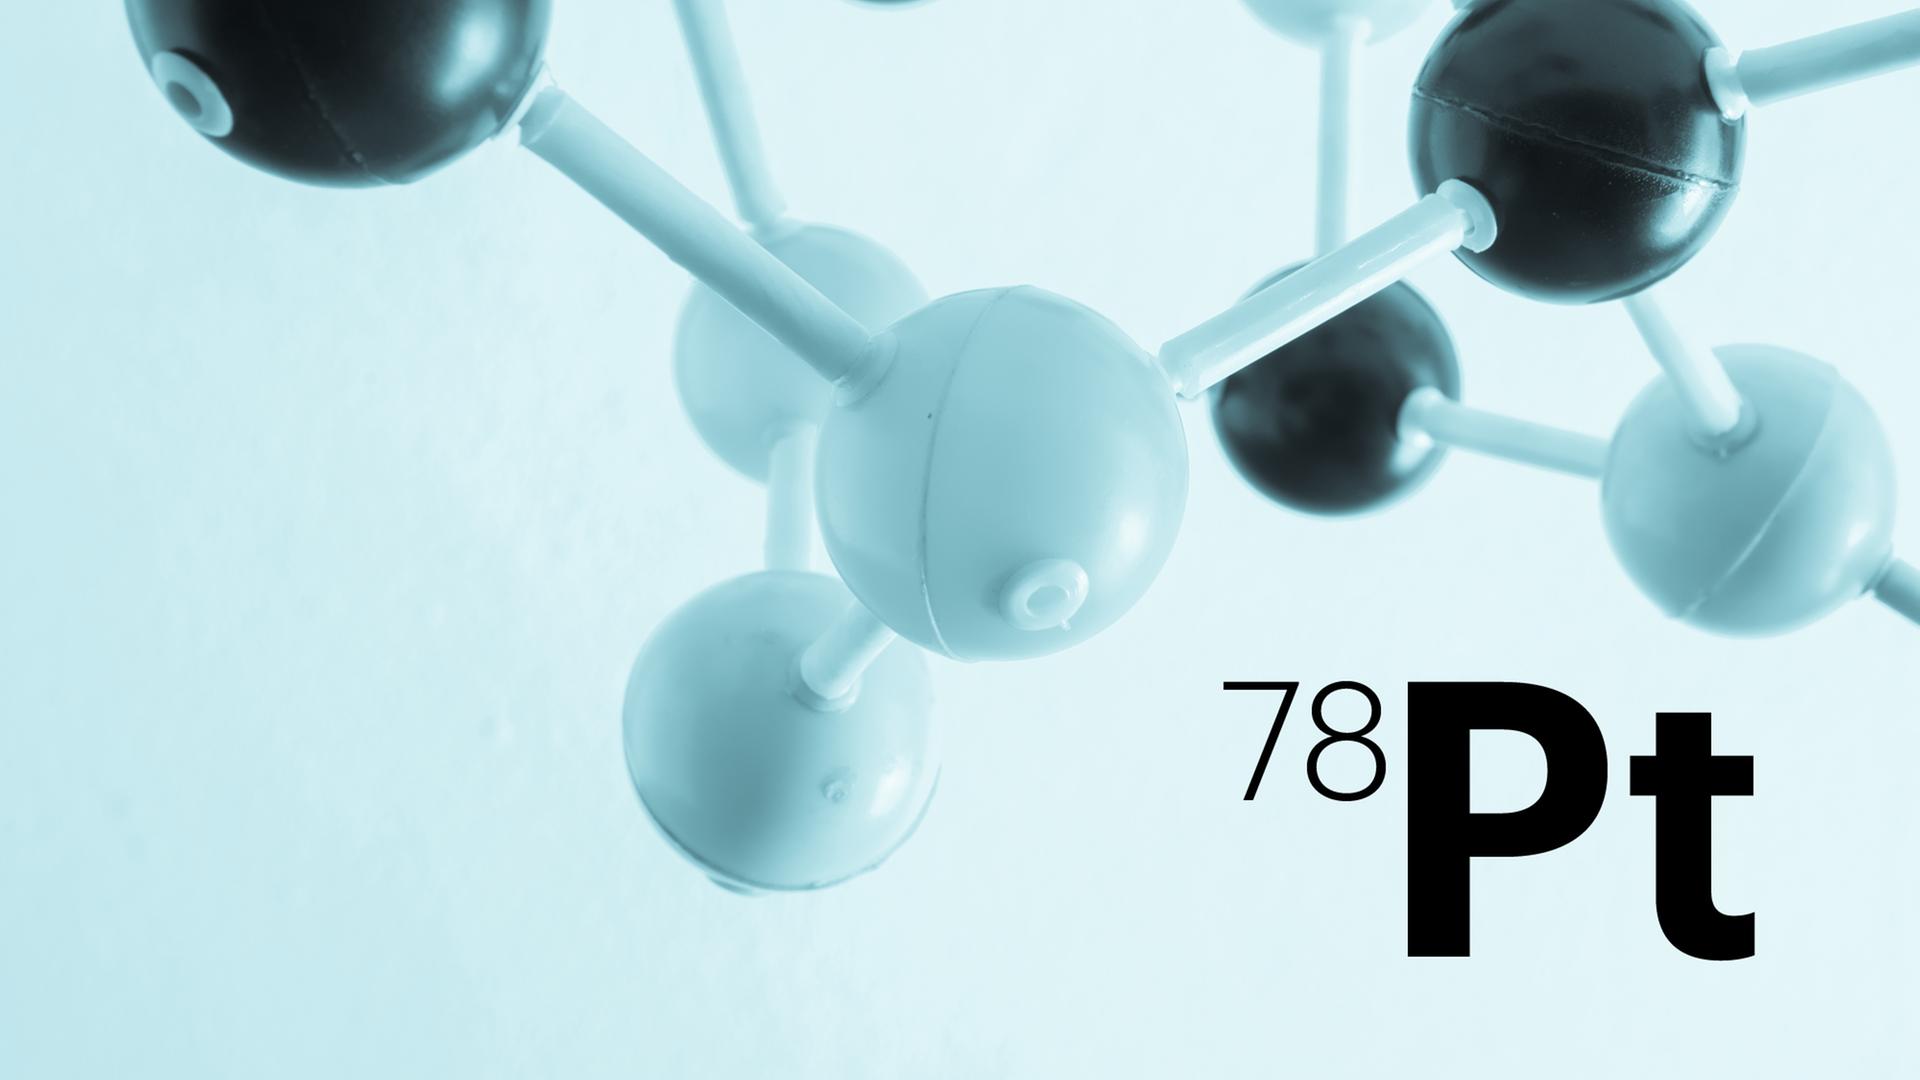 Das Modell eines Moleküls ist hinter der Abkürzung Pt (für Platin) zu sehen.